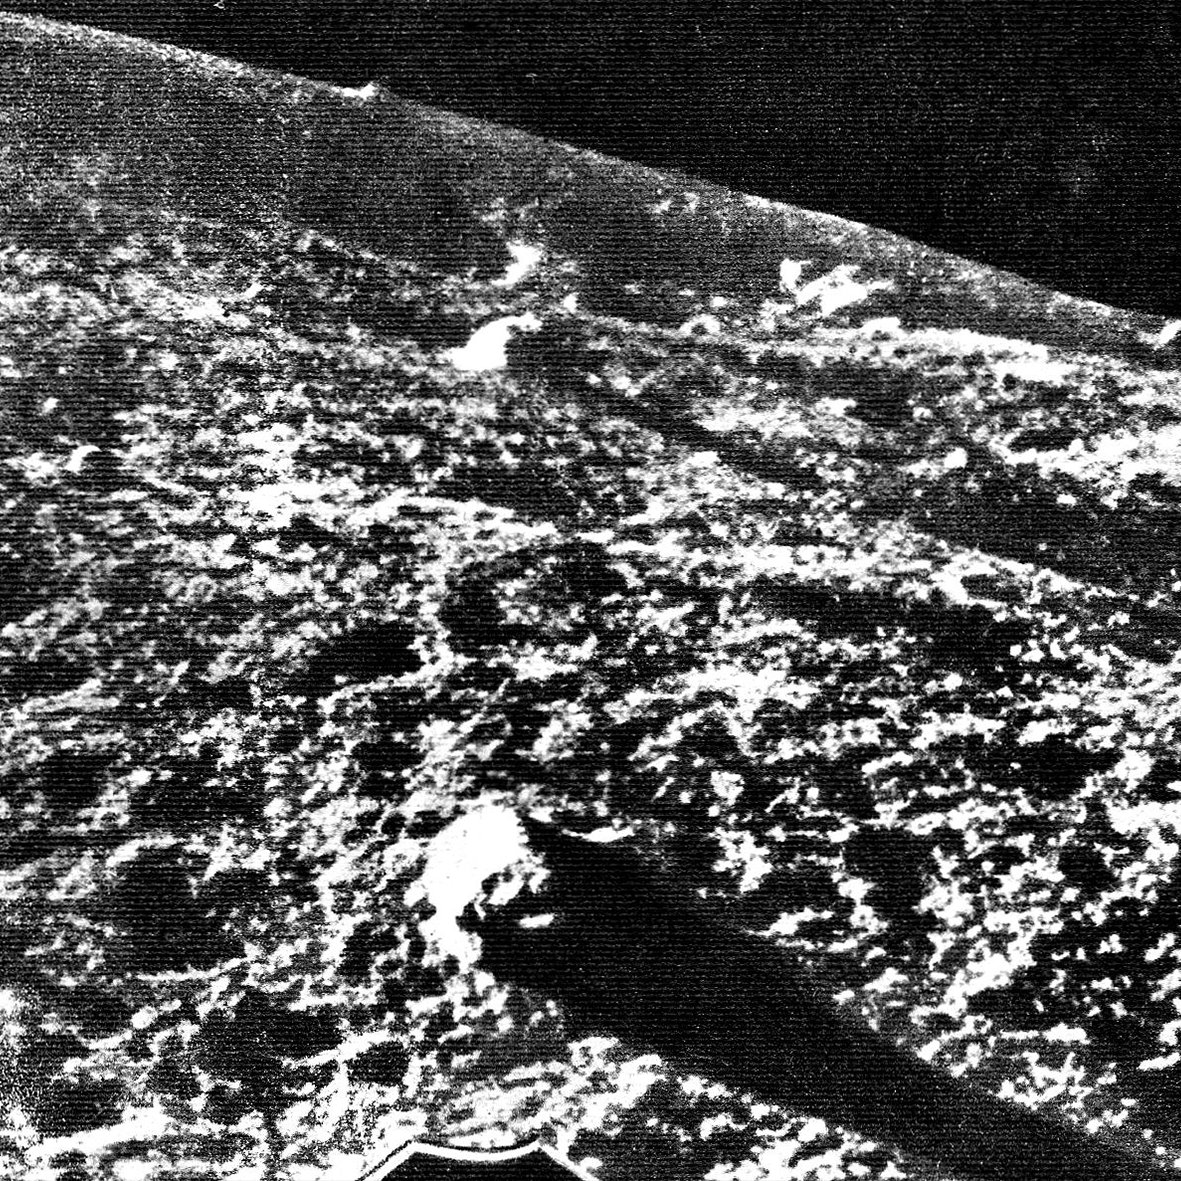 Луна 9 10. 1966 — АМС «Луна-9». 3 Февраля 1966. 3 Февраля 1966 событие космос. Луна 9 посадка 3 февраля.